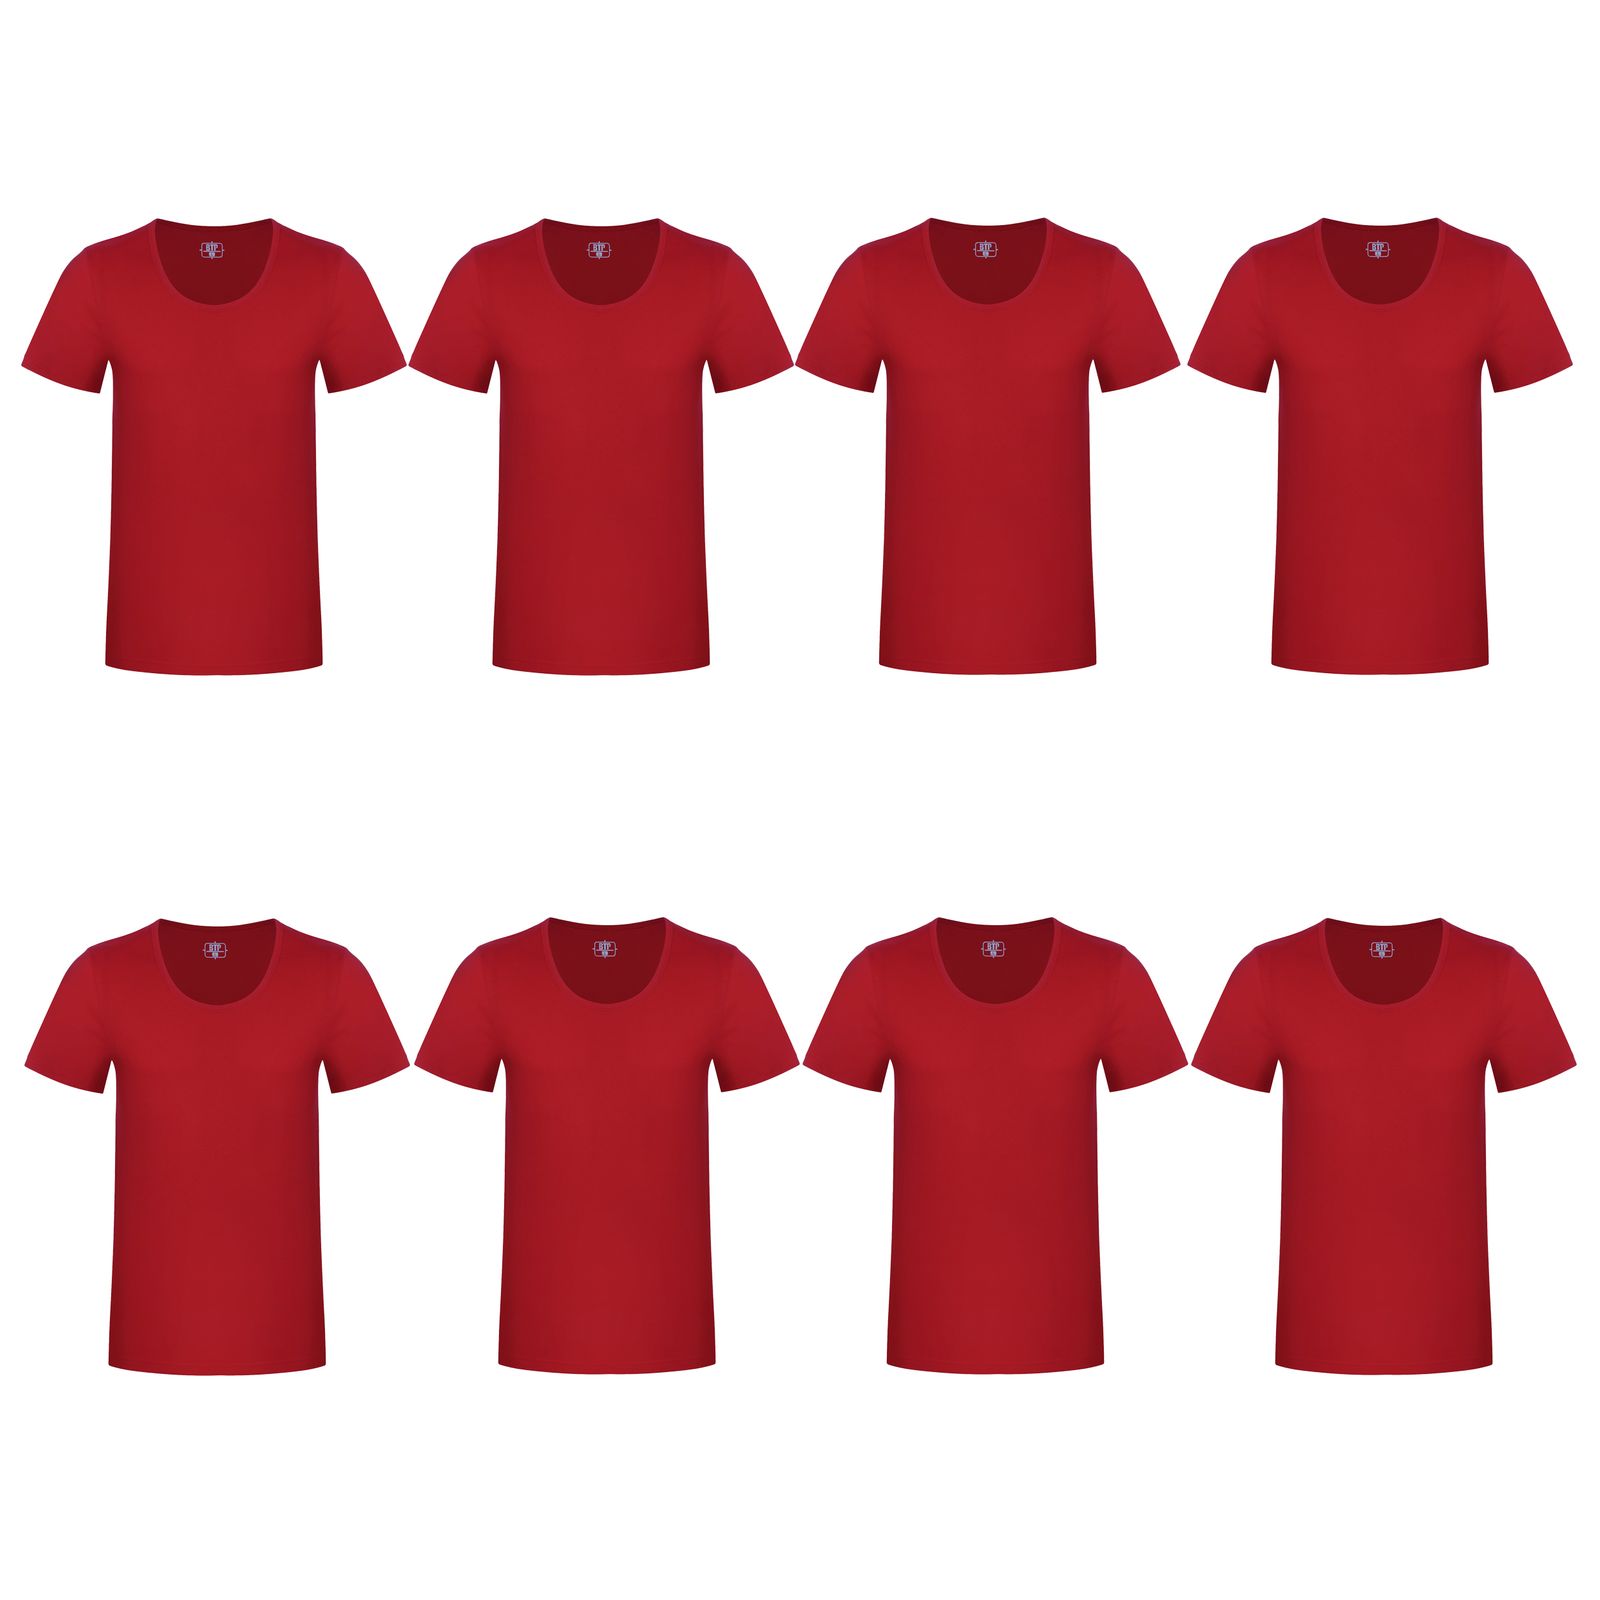 زیرپوش آستین دار مردانه برهان تن پوش مدل 2-02 رنگ قرمز بسته 8 عددی -  - 1